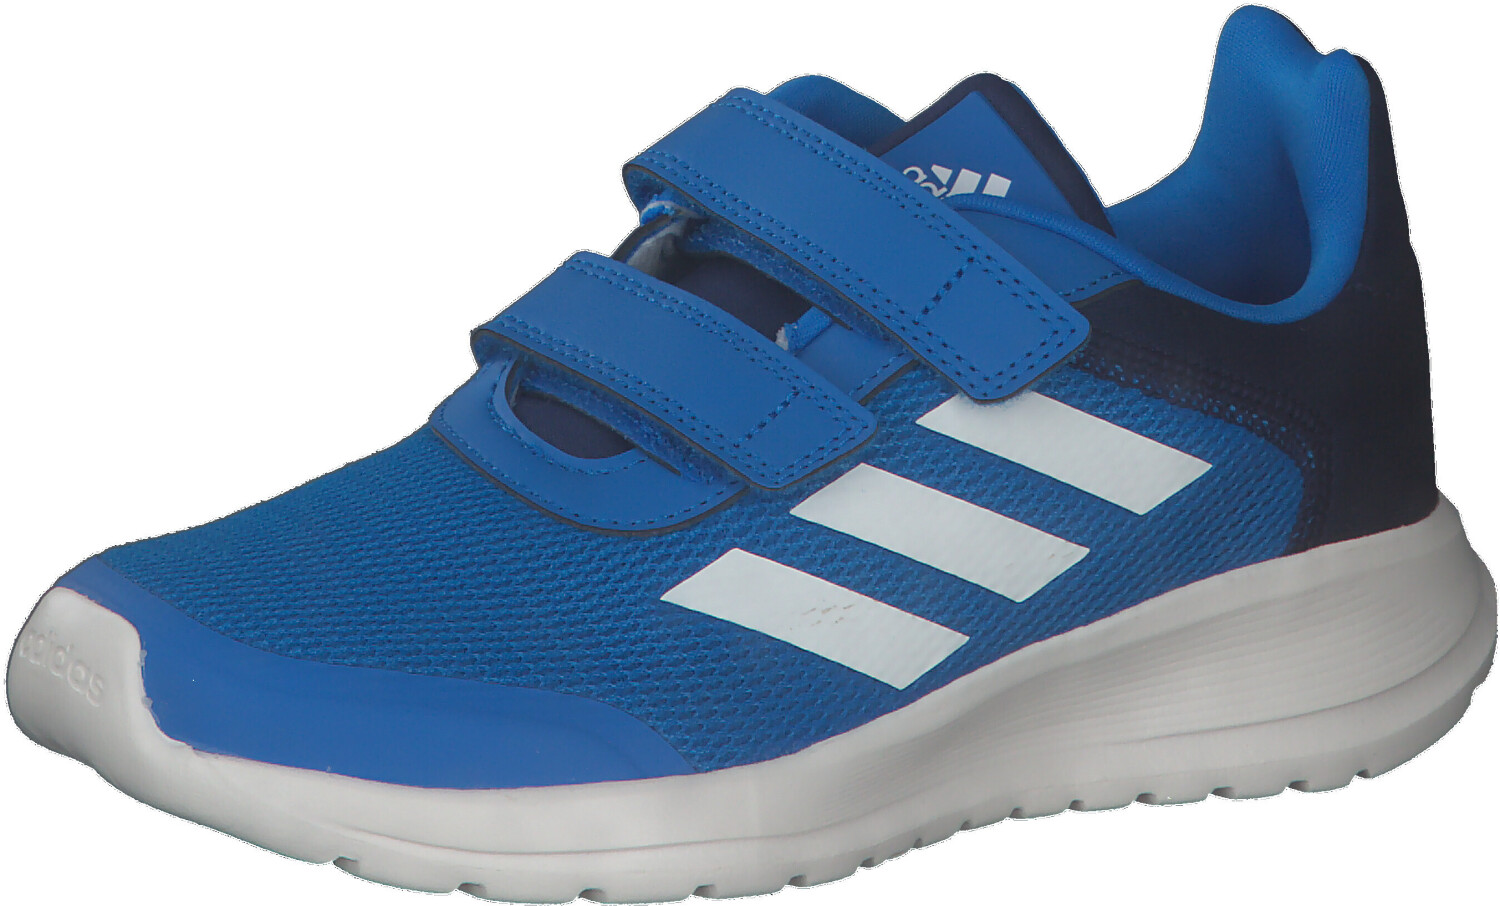 Adidas Tensaur Run Kids blue rush/core white/dark blue ab 23,99 € |  Preisvergleich bei